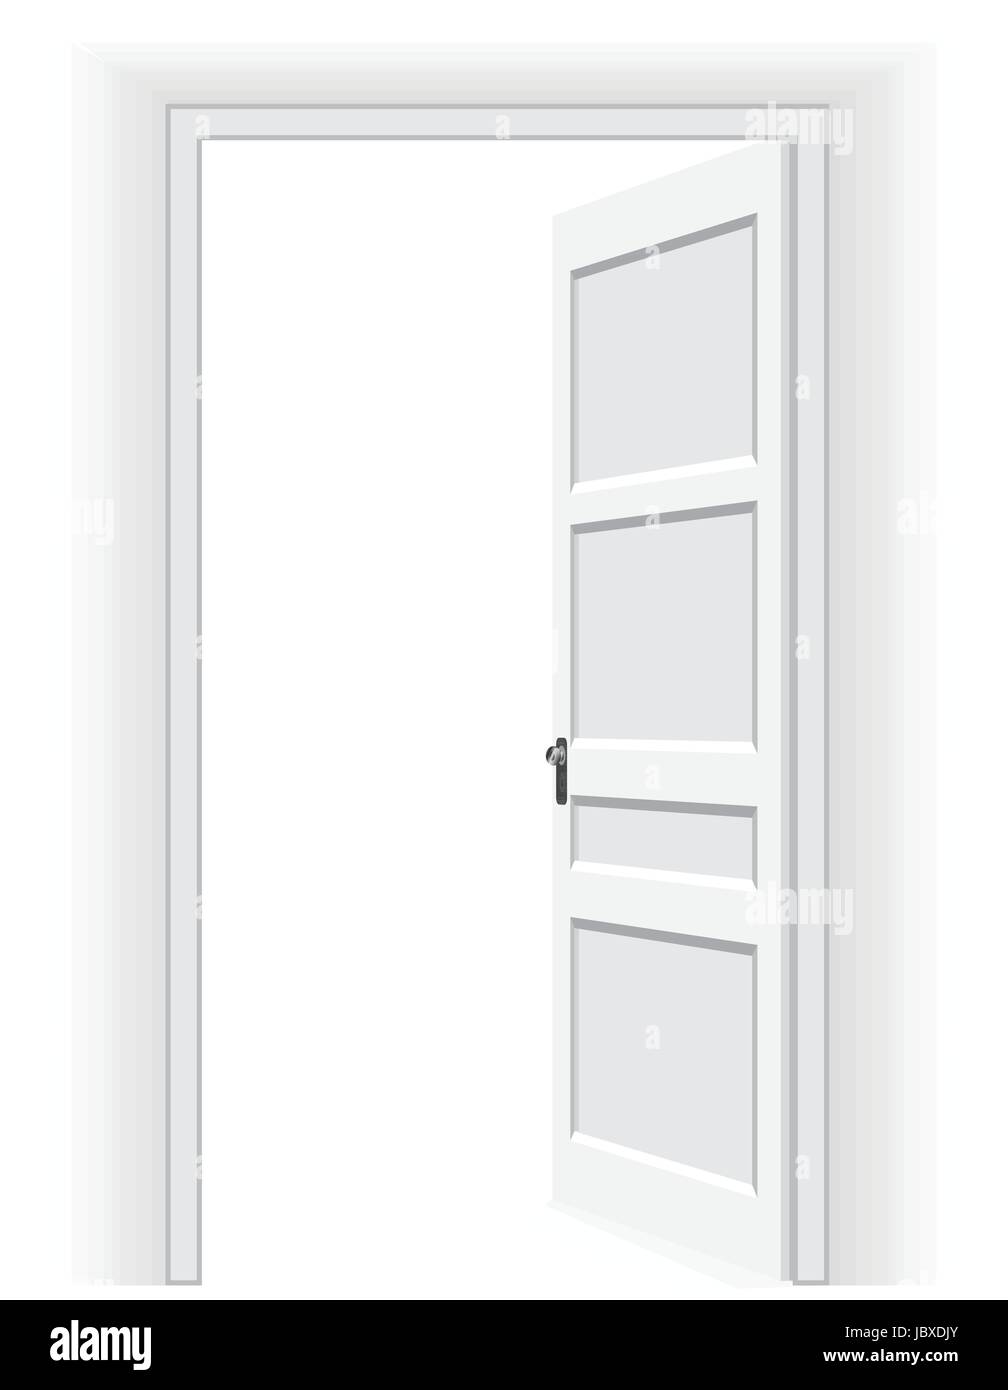 Open door in a white interior room. Vector background Stock Vector